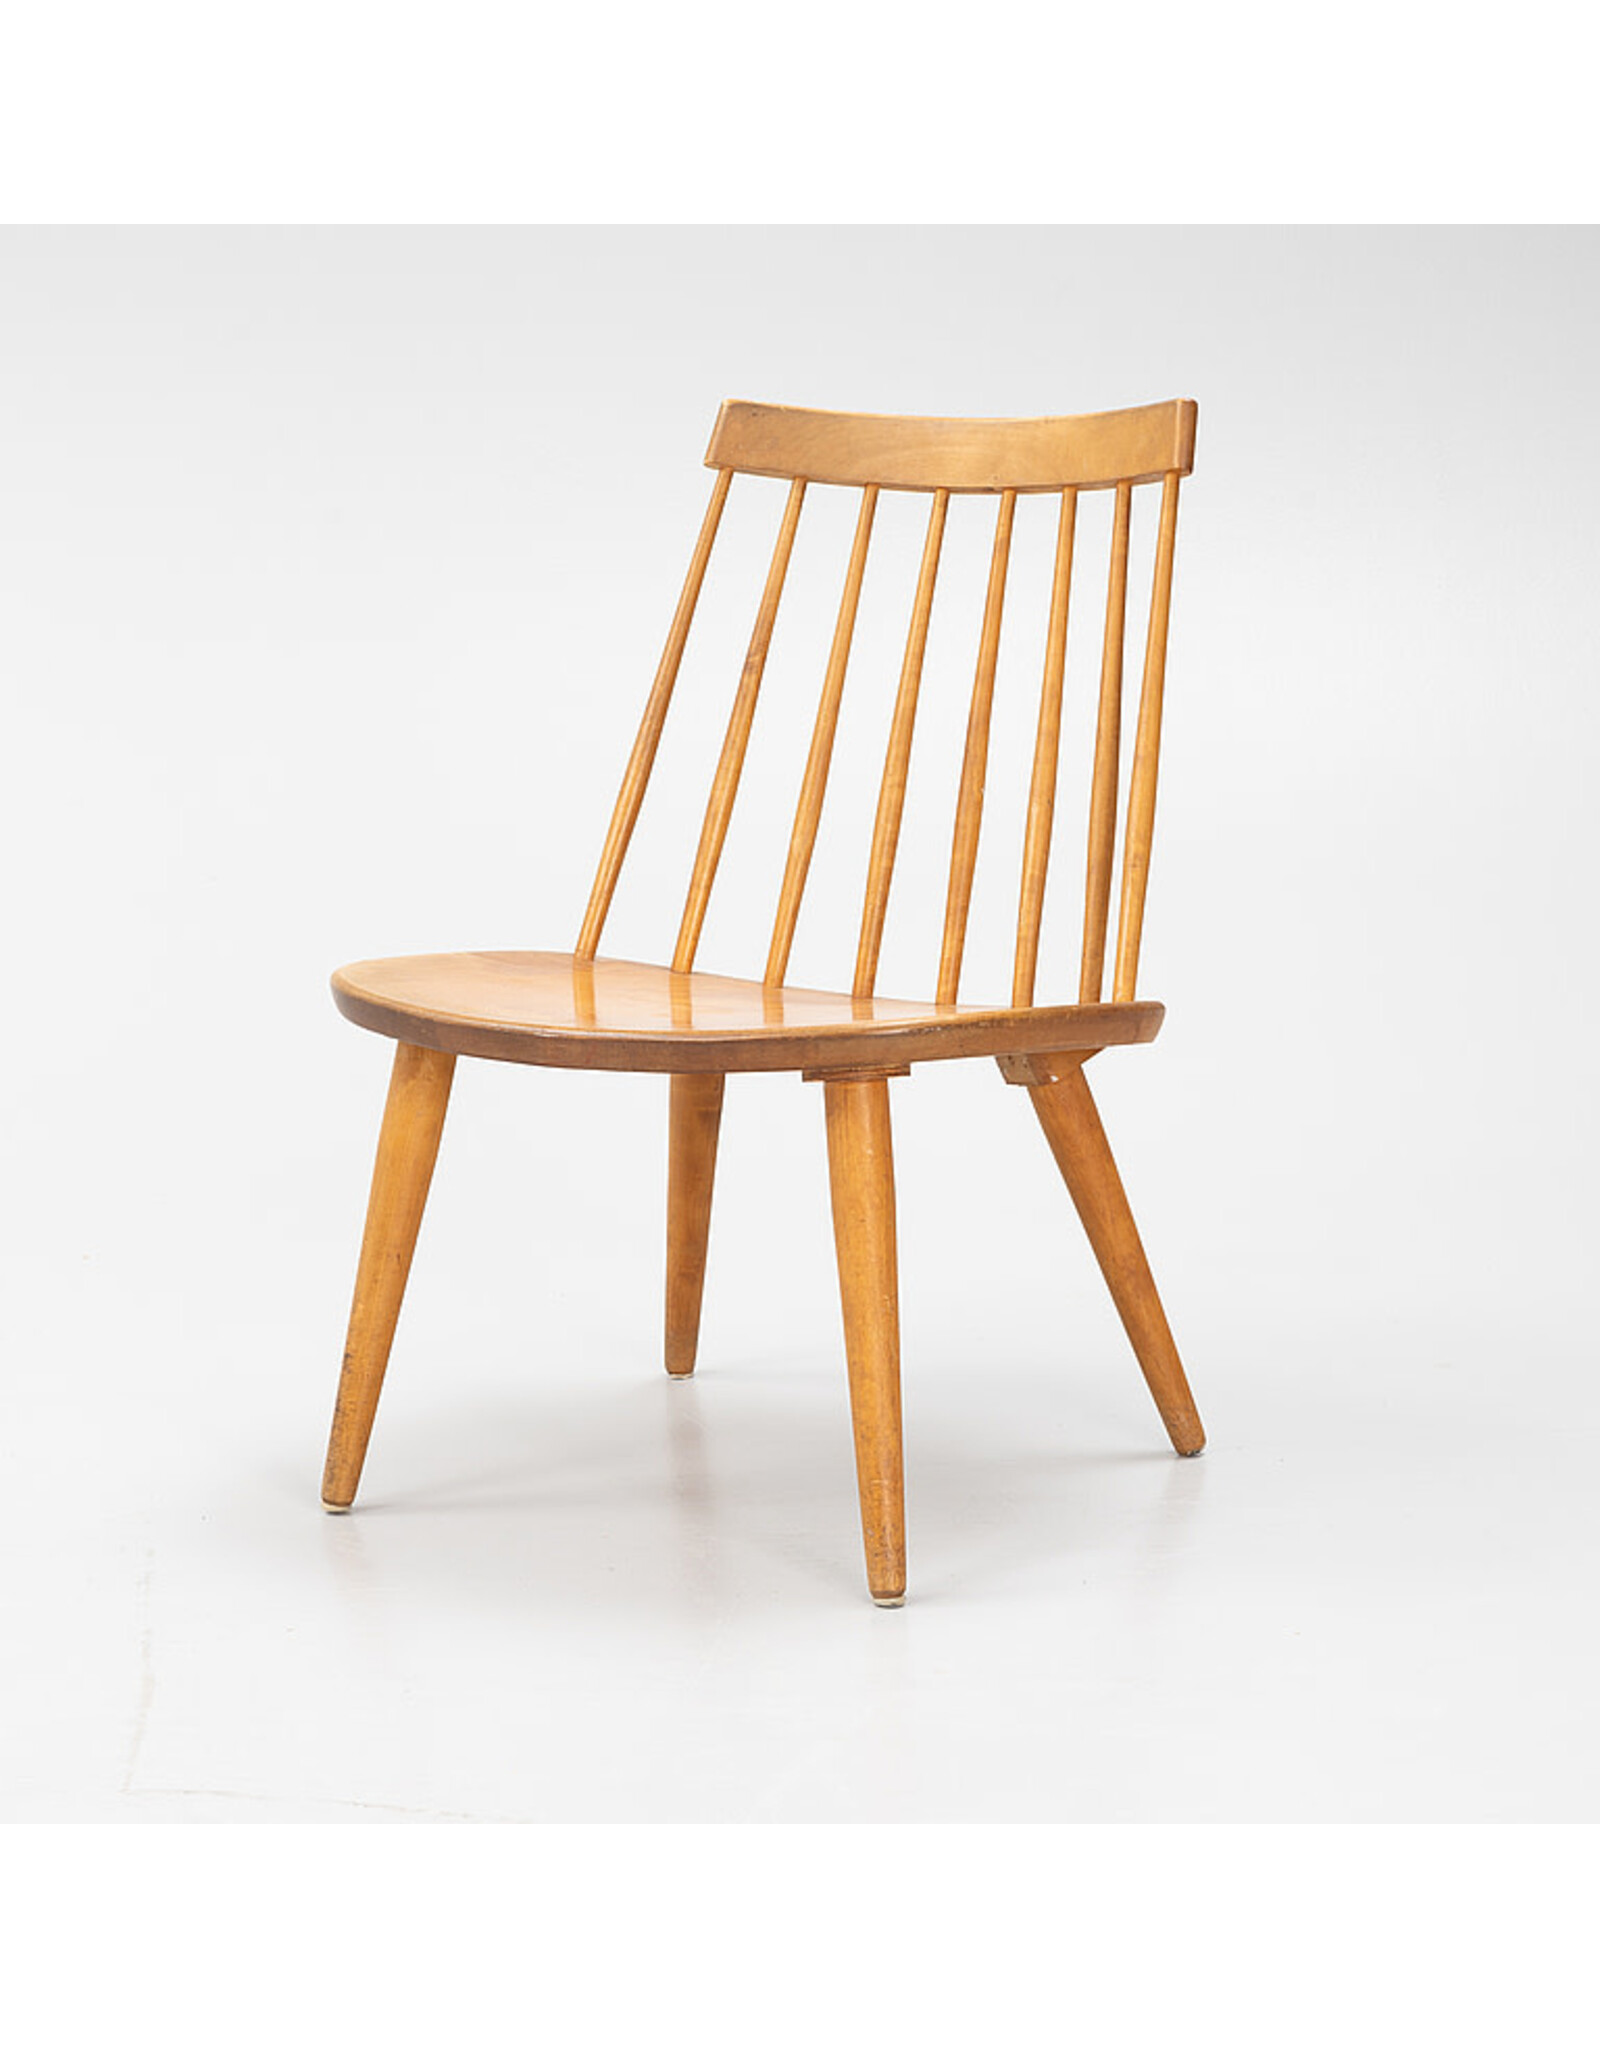 1960 年代的柚木椅子